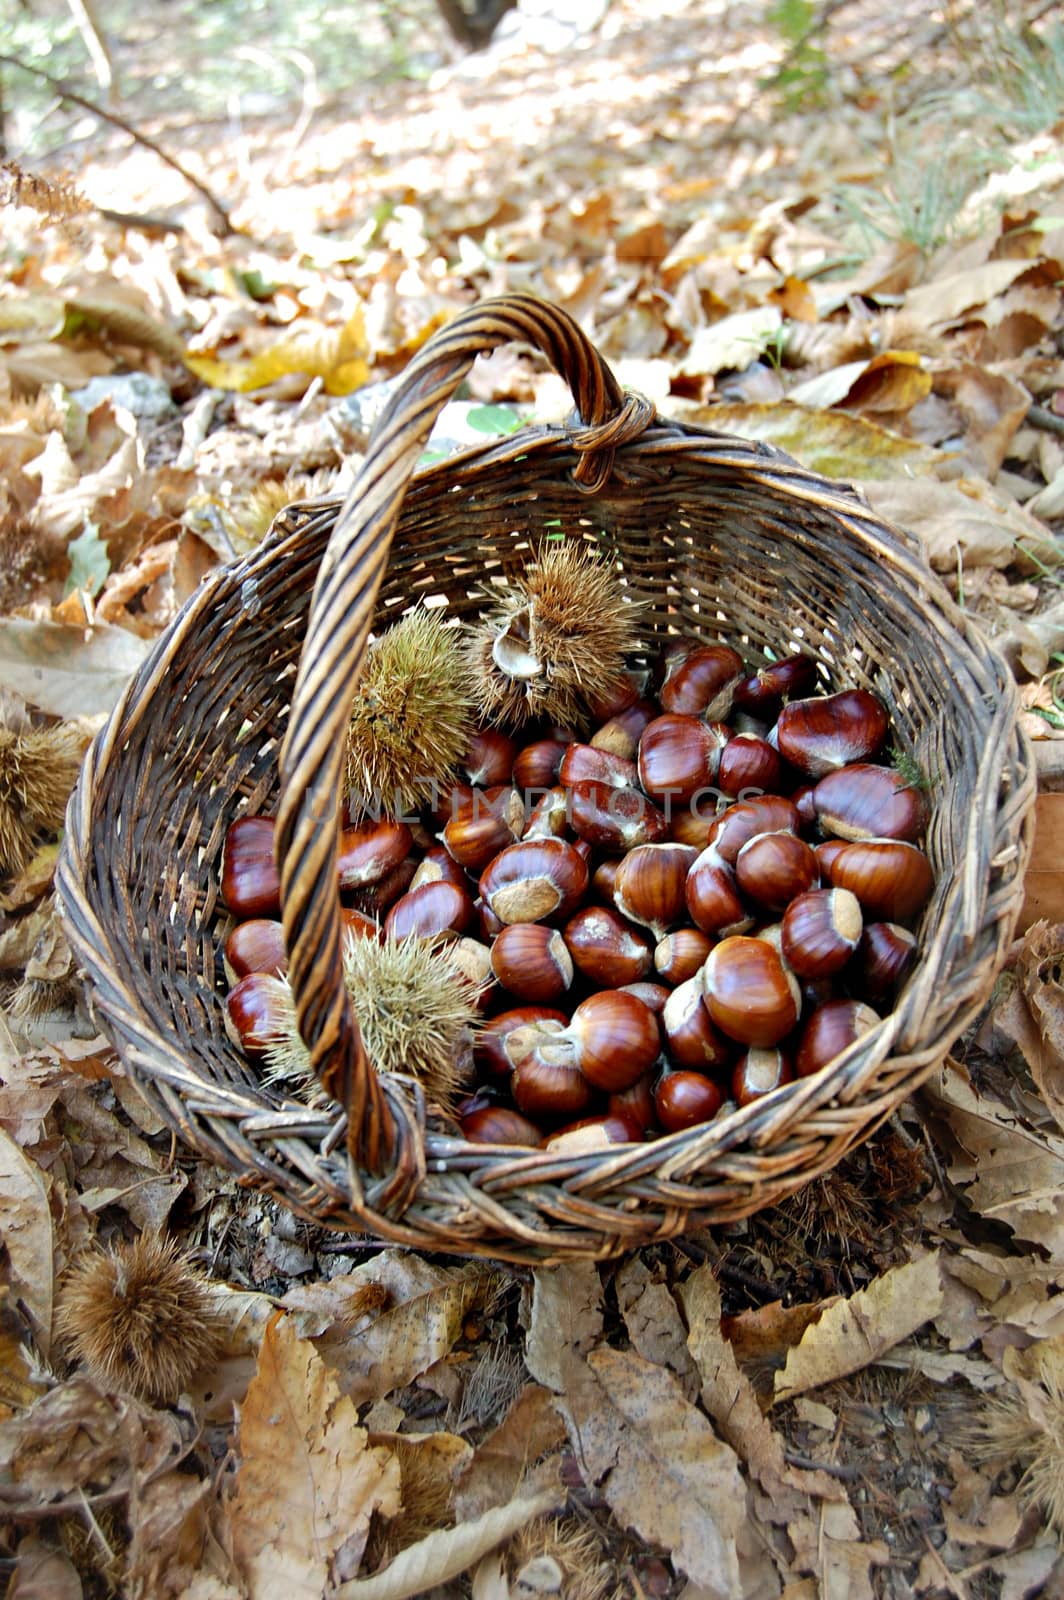 Chestnut in a wicker basket by aletermi